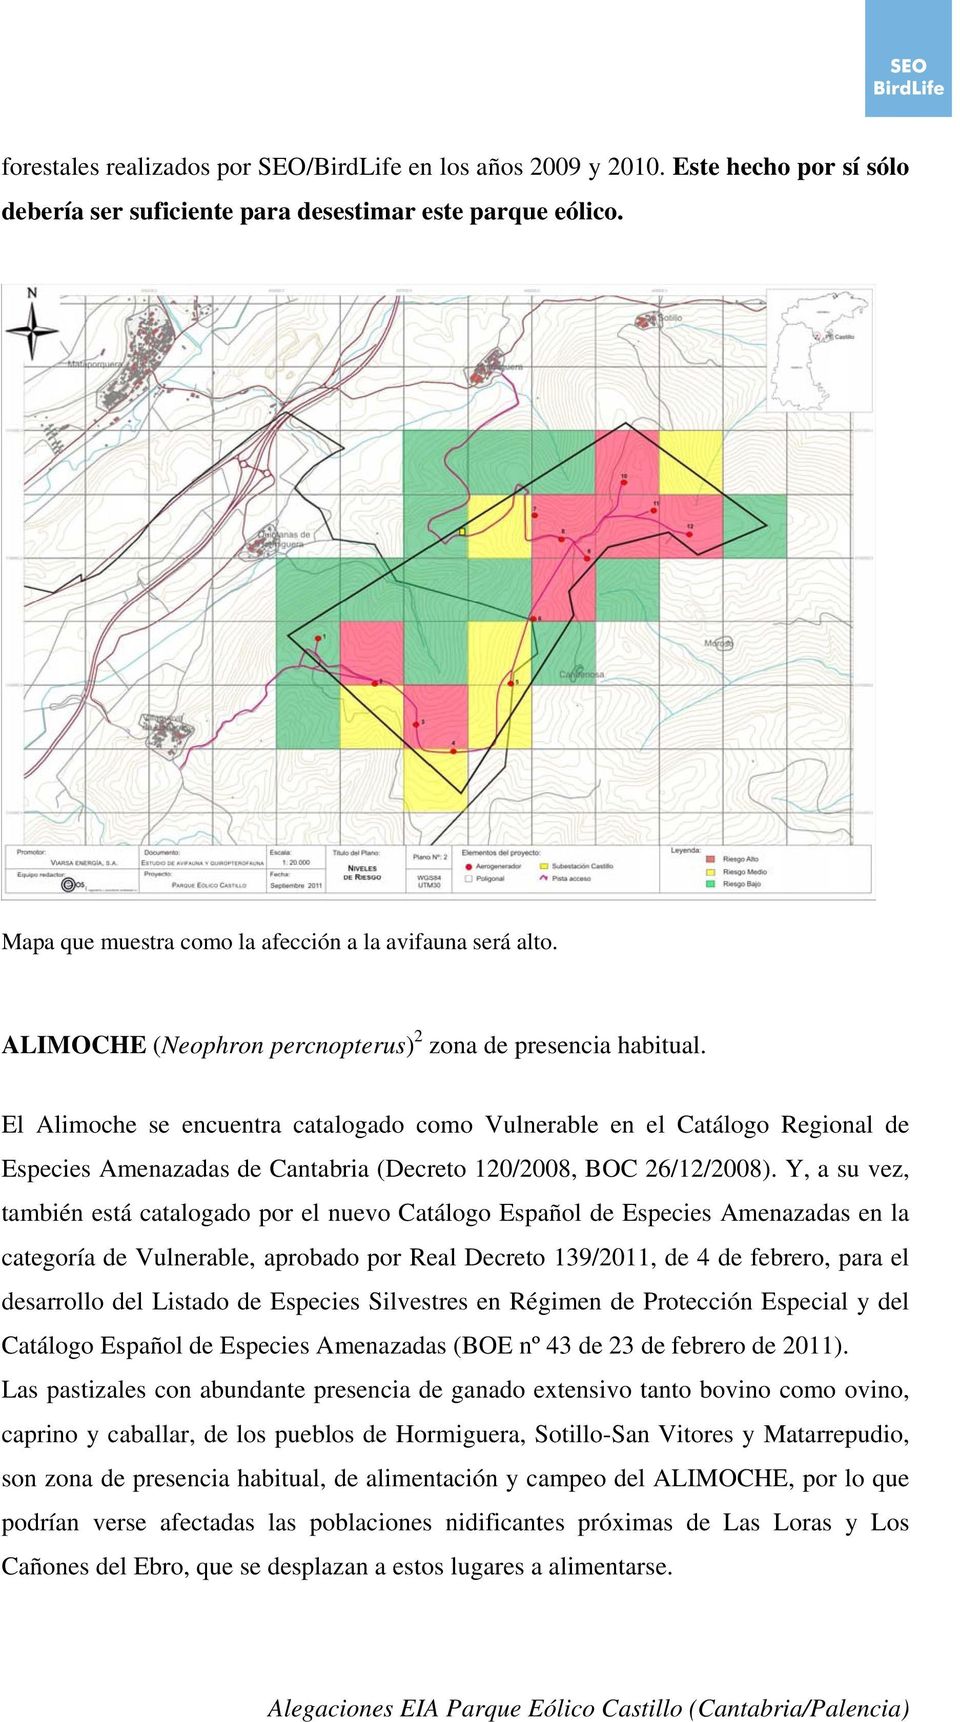 El Alimoche se encuentra catalogado como Vulnerable en el Catálogo Regional de Especies Amenazadas de Cantabria (Decreto 120/2008, BOC 26/12/2008).